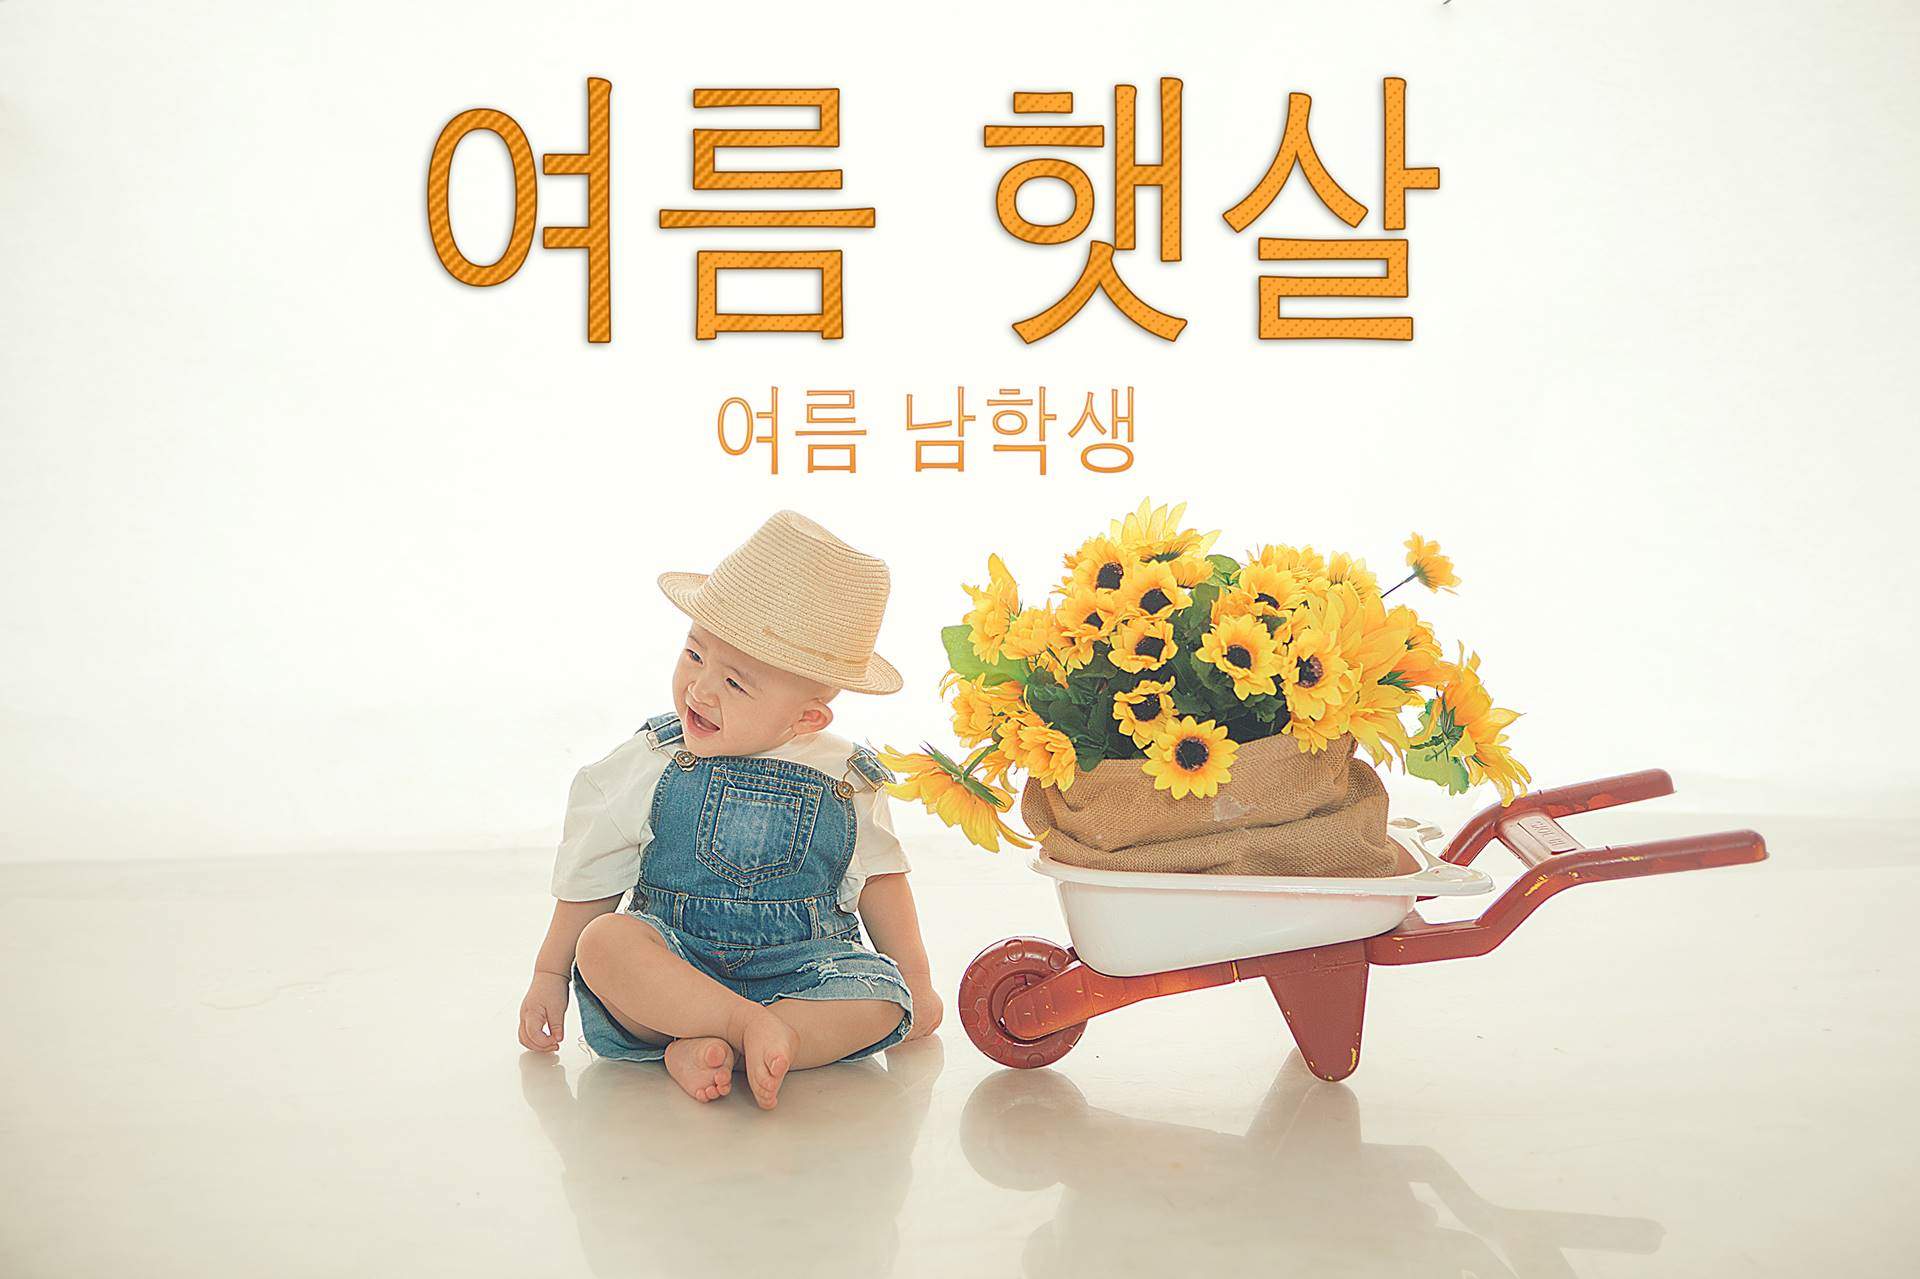 Chụp ảnh cho bé phong cách Hàn Quốc - Donald studio, Chụp hình cho bé phong cách Hàn Quốc, chup anh han quoc, chụp ảnh hàn quốc cho bé